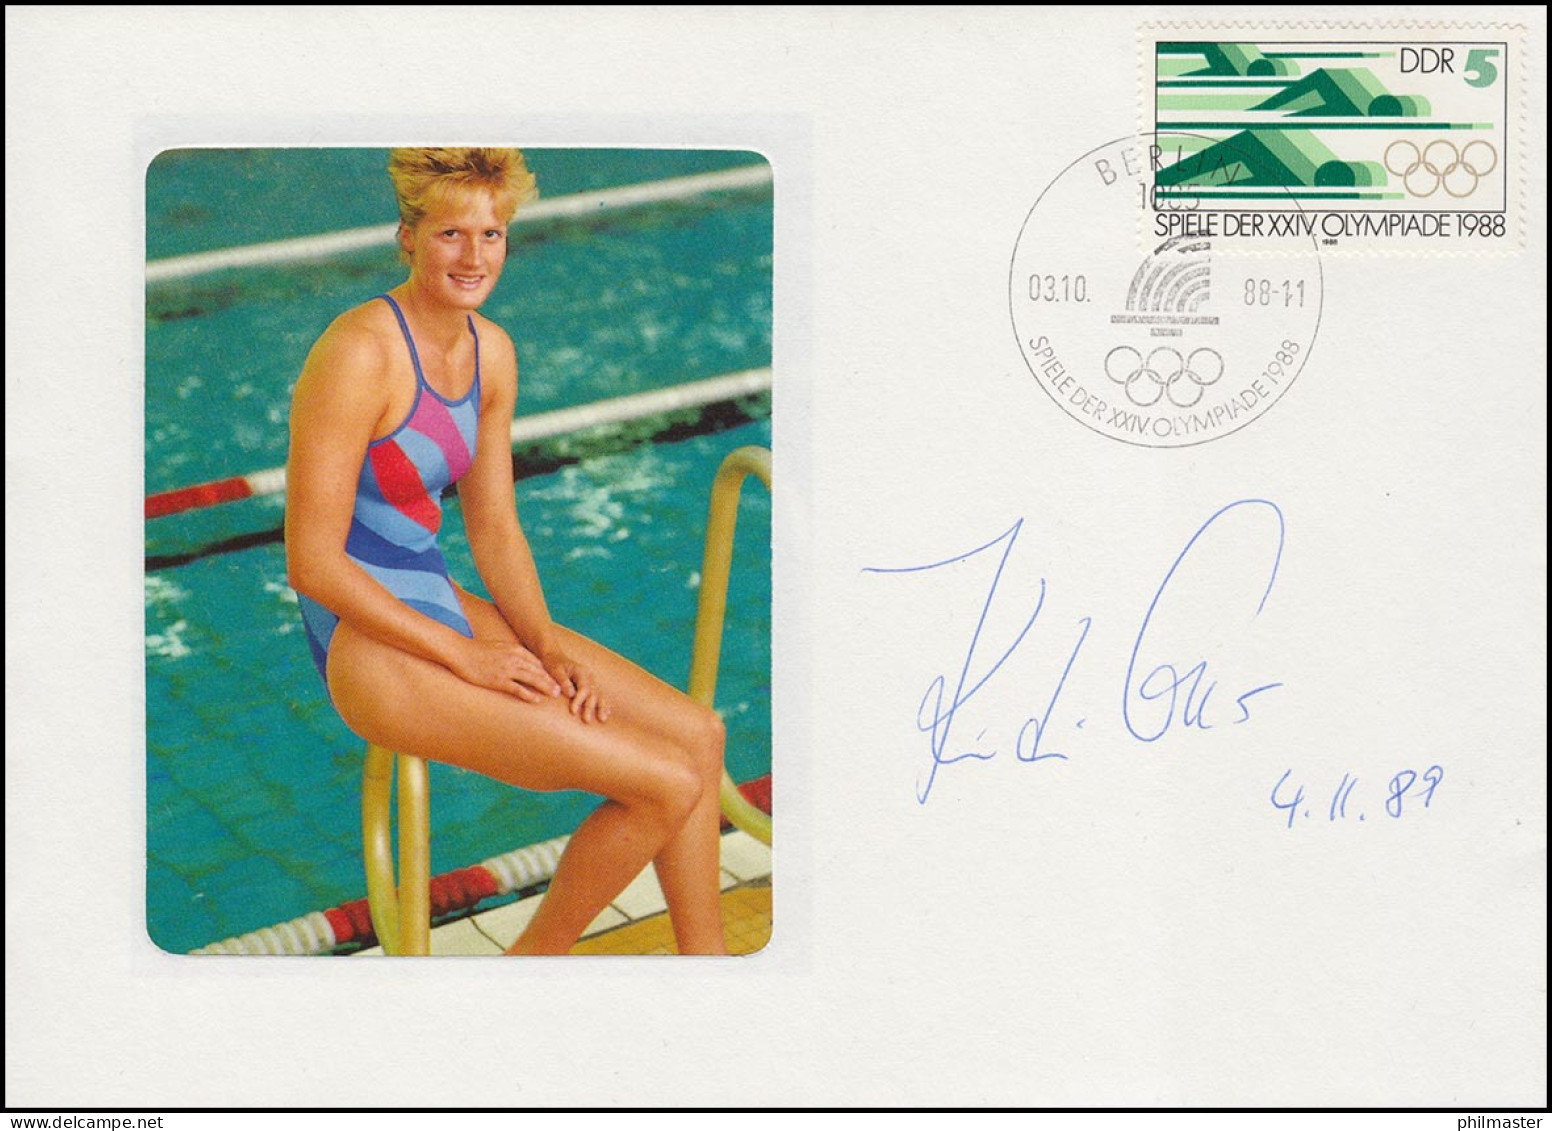 Autogramm Kristin Otto Auf Passendem Schmuck-Brief SSt Berlin Olympia 3.10.88 - Schwimmen